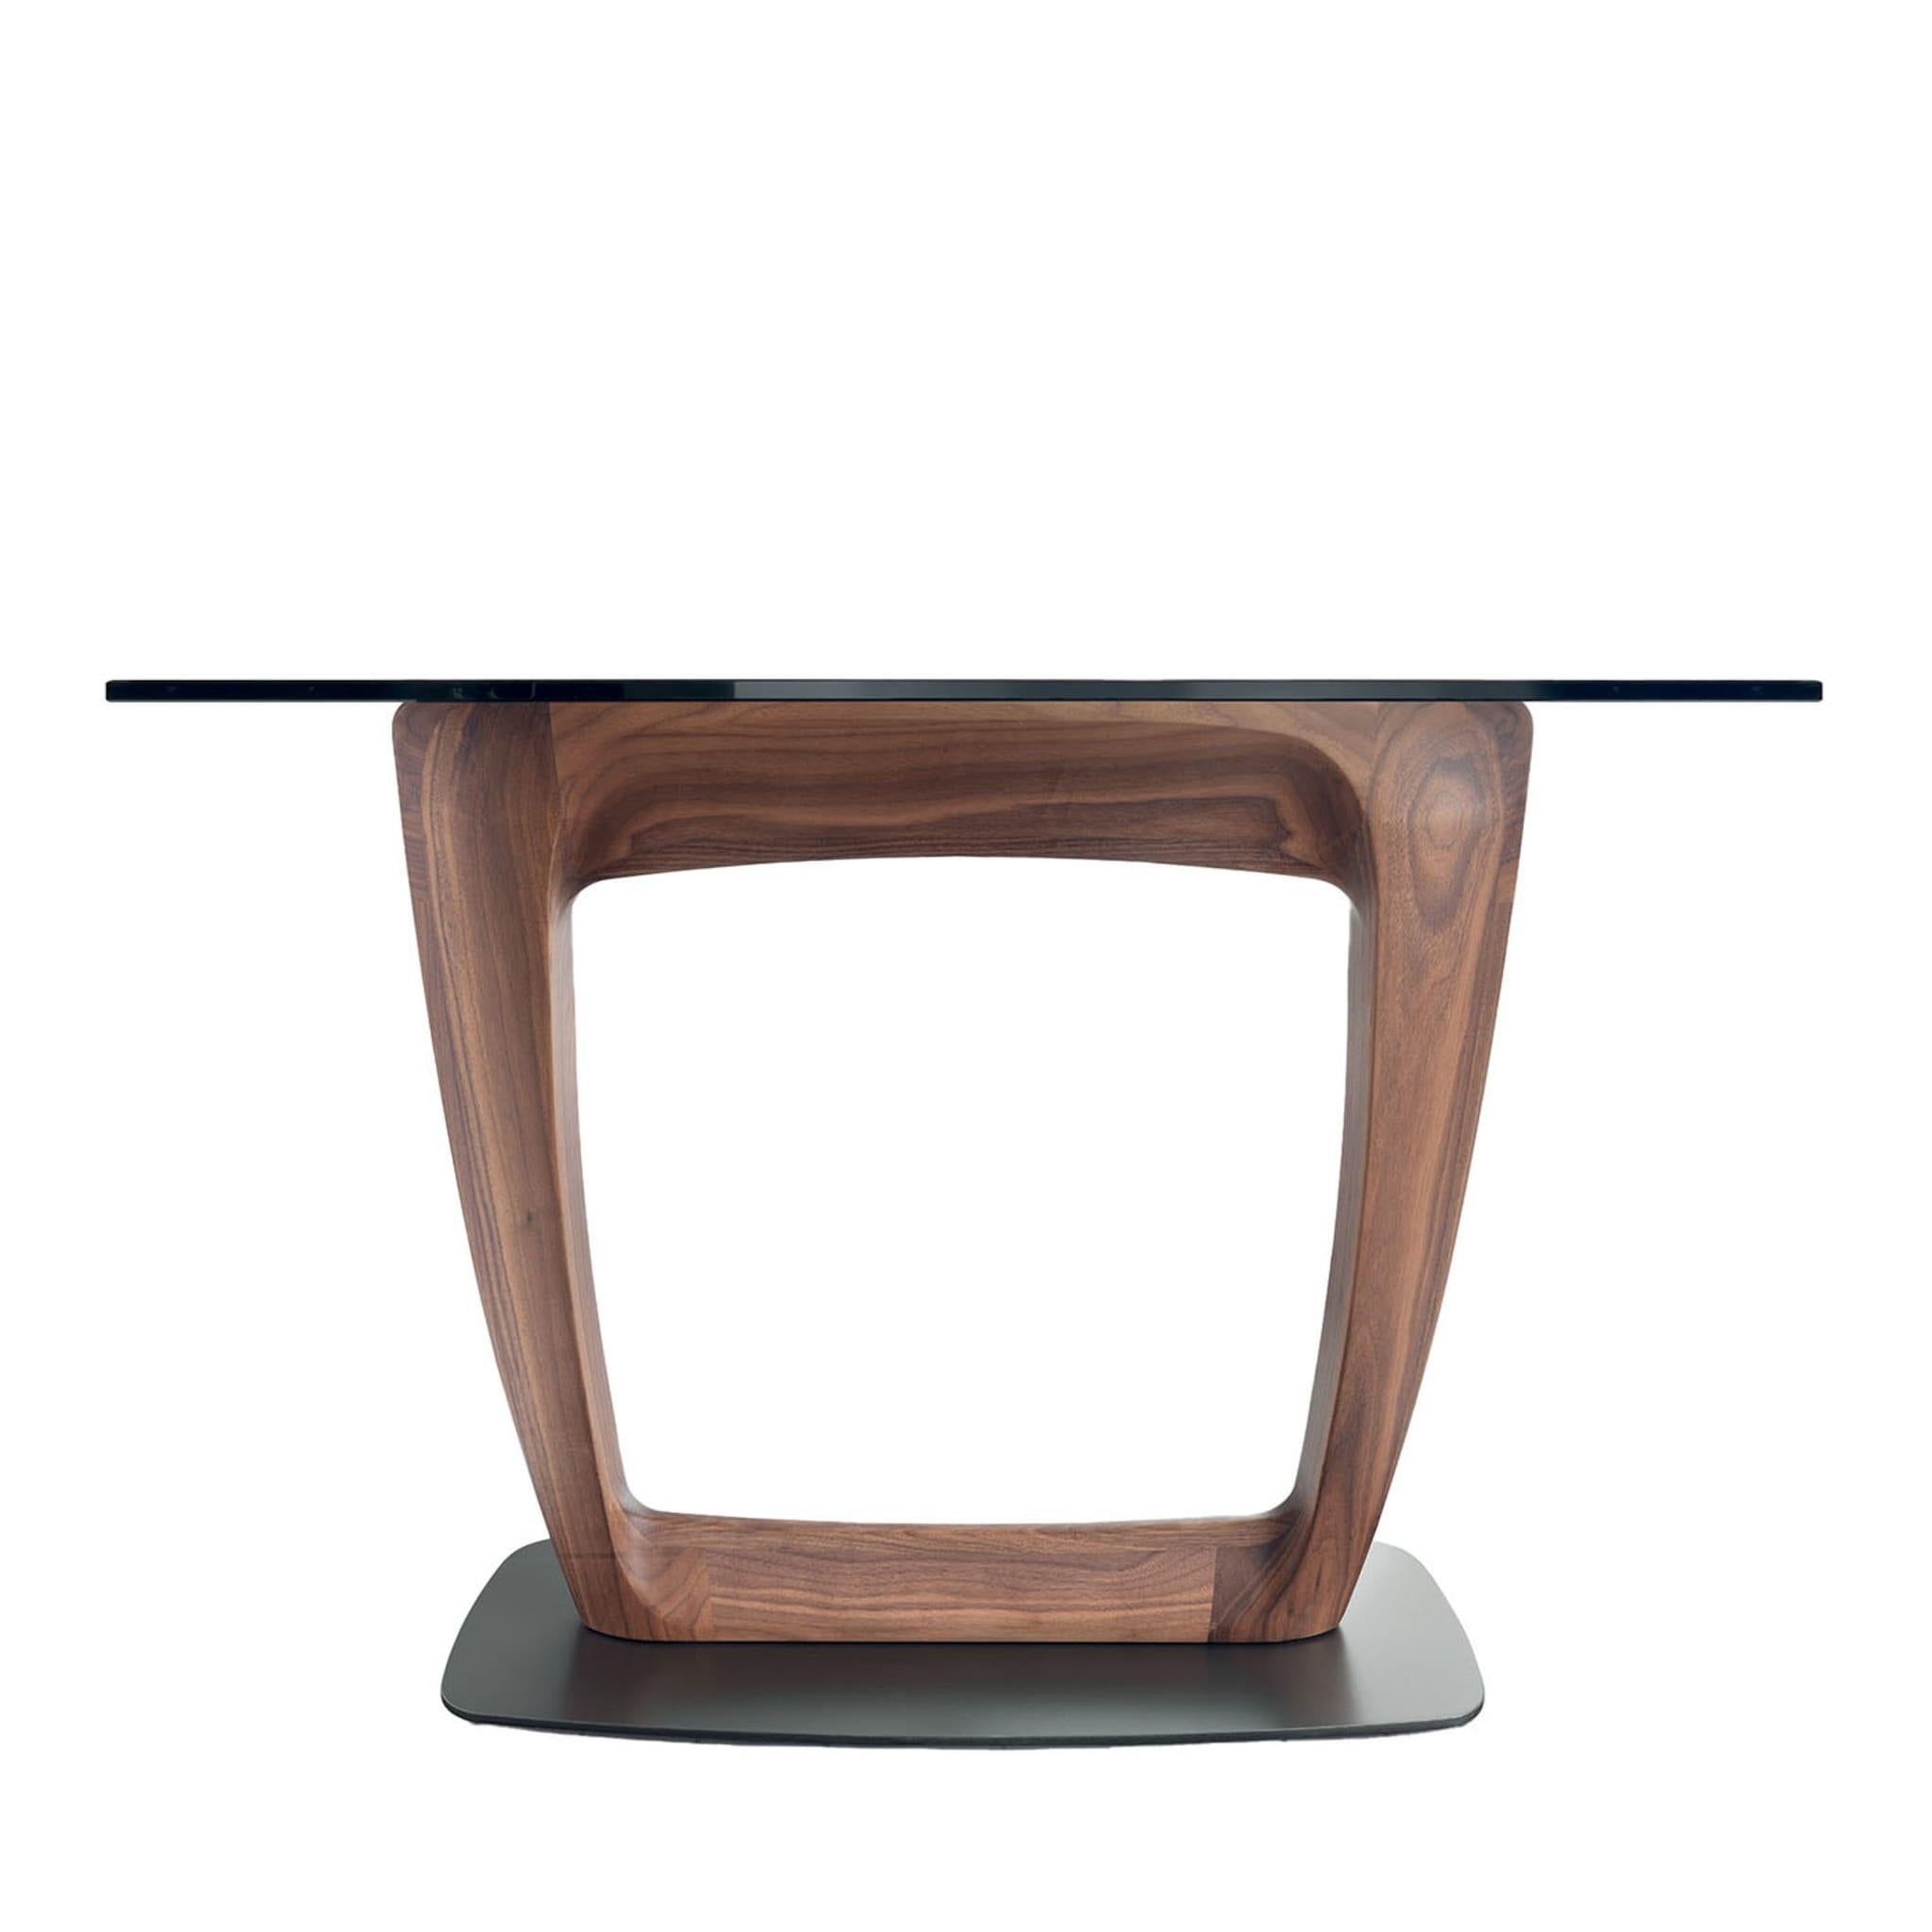 Conçue par Stefano Bigi, cette table console audacieuse fera sensation dans un décor contemporain, industriel ou d'inspiration rustique. Le plateau de la table (10 ou 12 mm d'épaisseur) est soudé à une base en noyer Canaletto massif qui se distingue